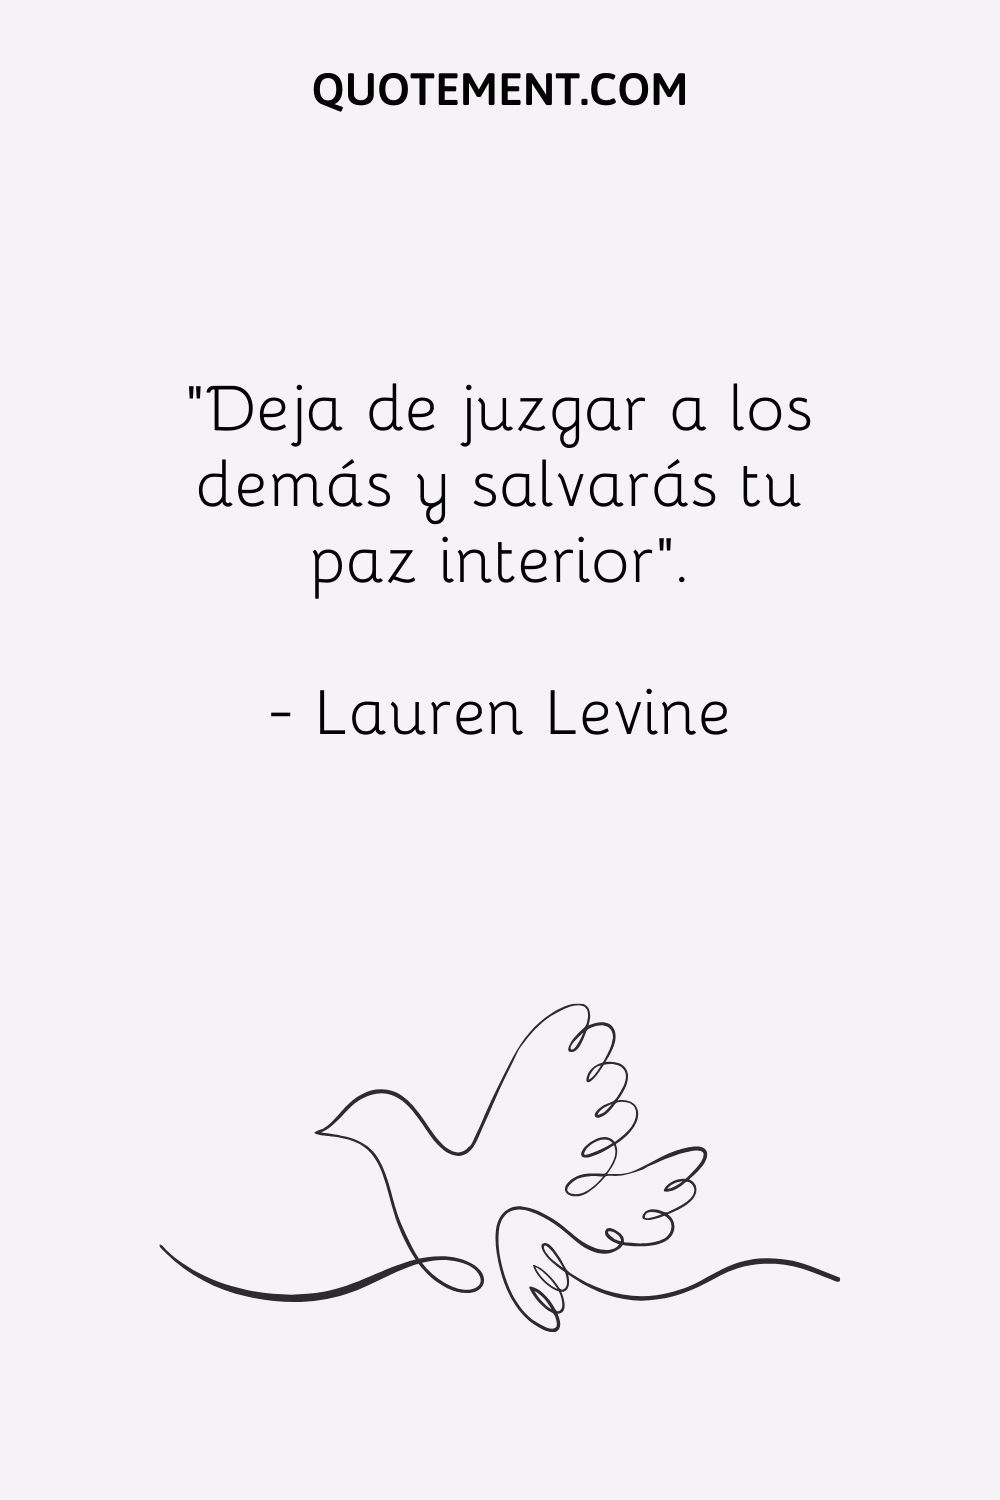 "Deja de juzgar a los demás y salvarás tu paz interior". - Lauren Levine